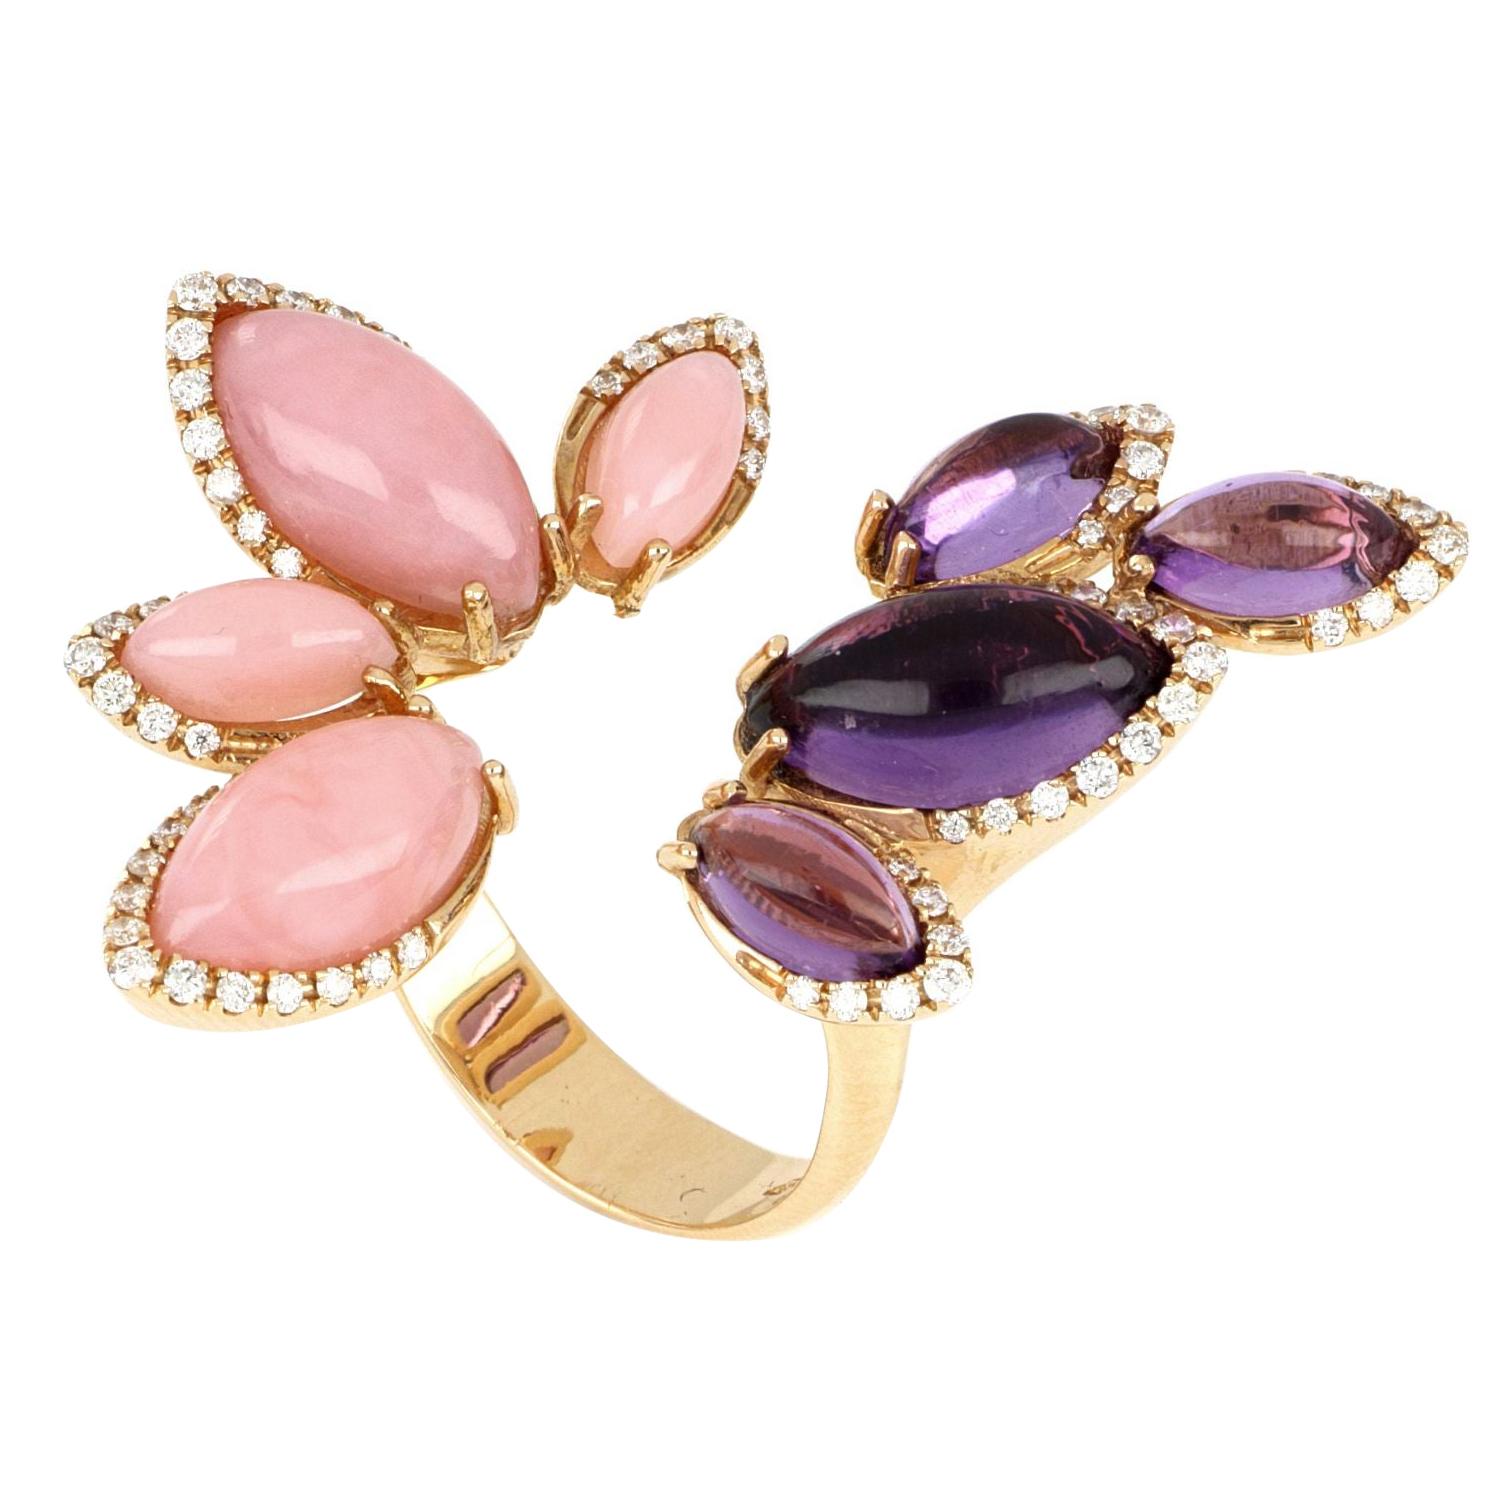 Les Papillons Bague en or rose 18 carats avec opale rose, améthyste violette et diamants